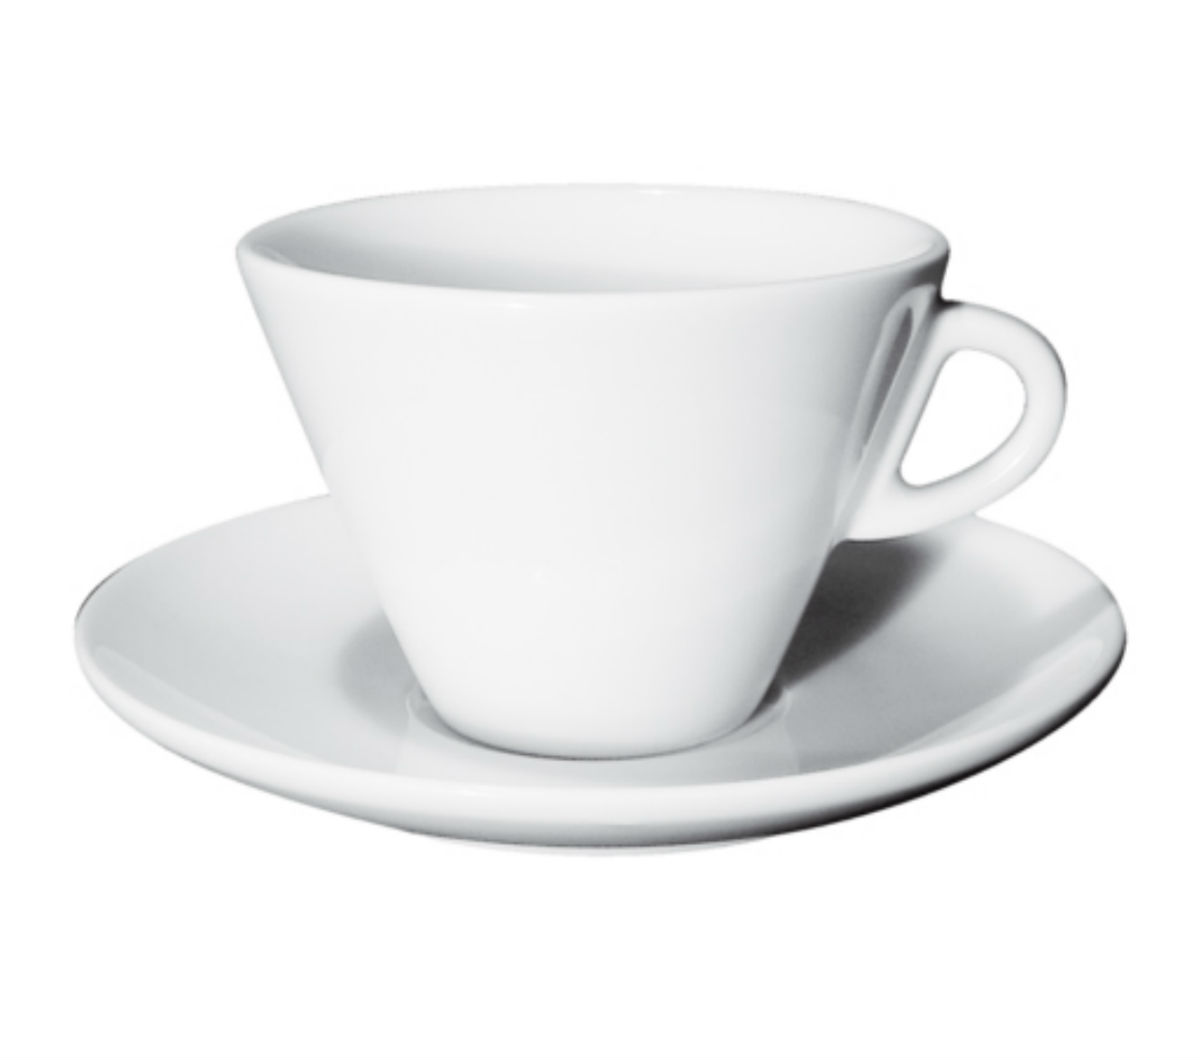 "FAVORITA" Latte Cups